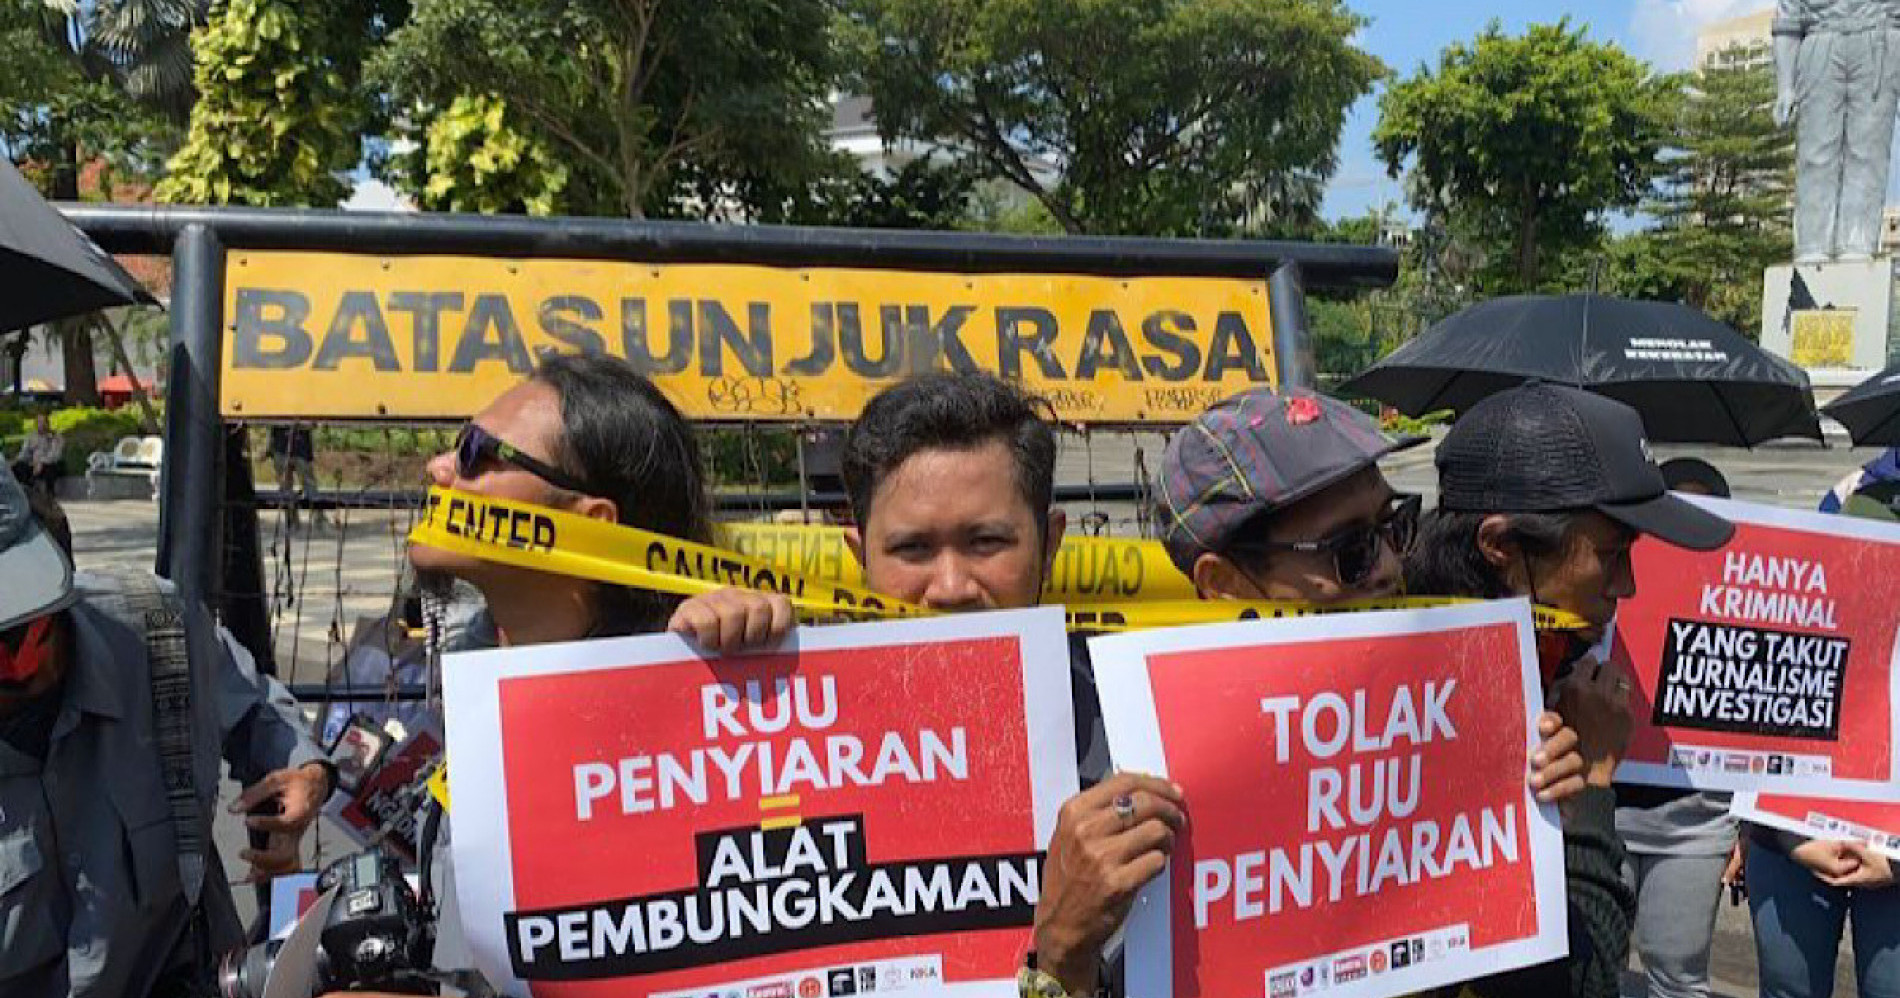 Unjuk rasa menolak keras adanya revisi undang-undang penyiaran. (Sumber gambar: ANTARA/HO-PFI Surabaya)